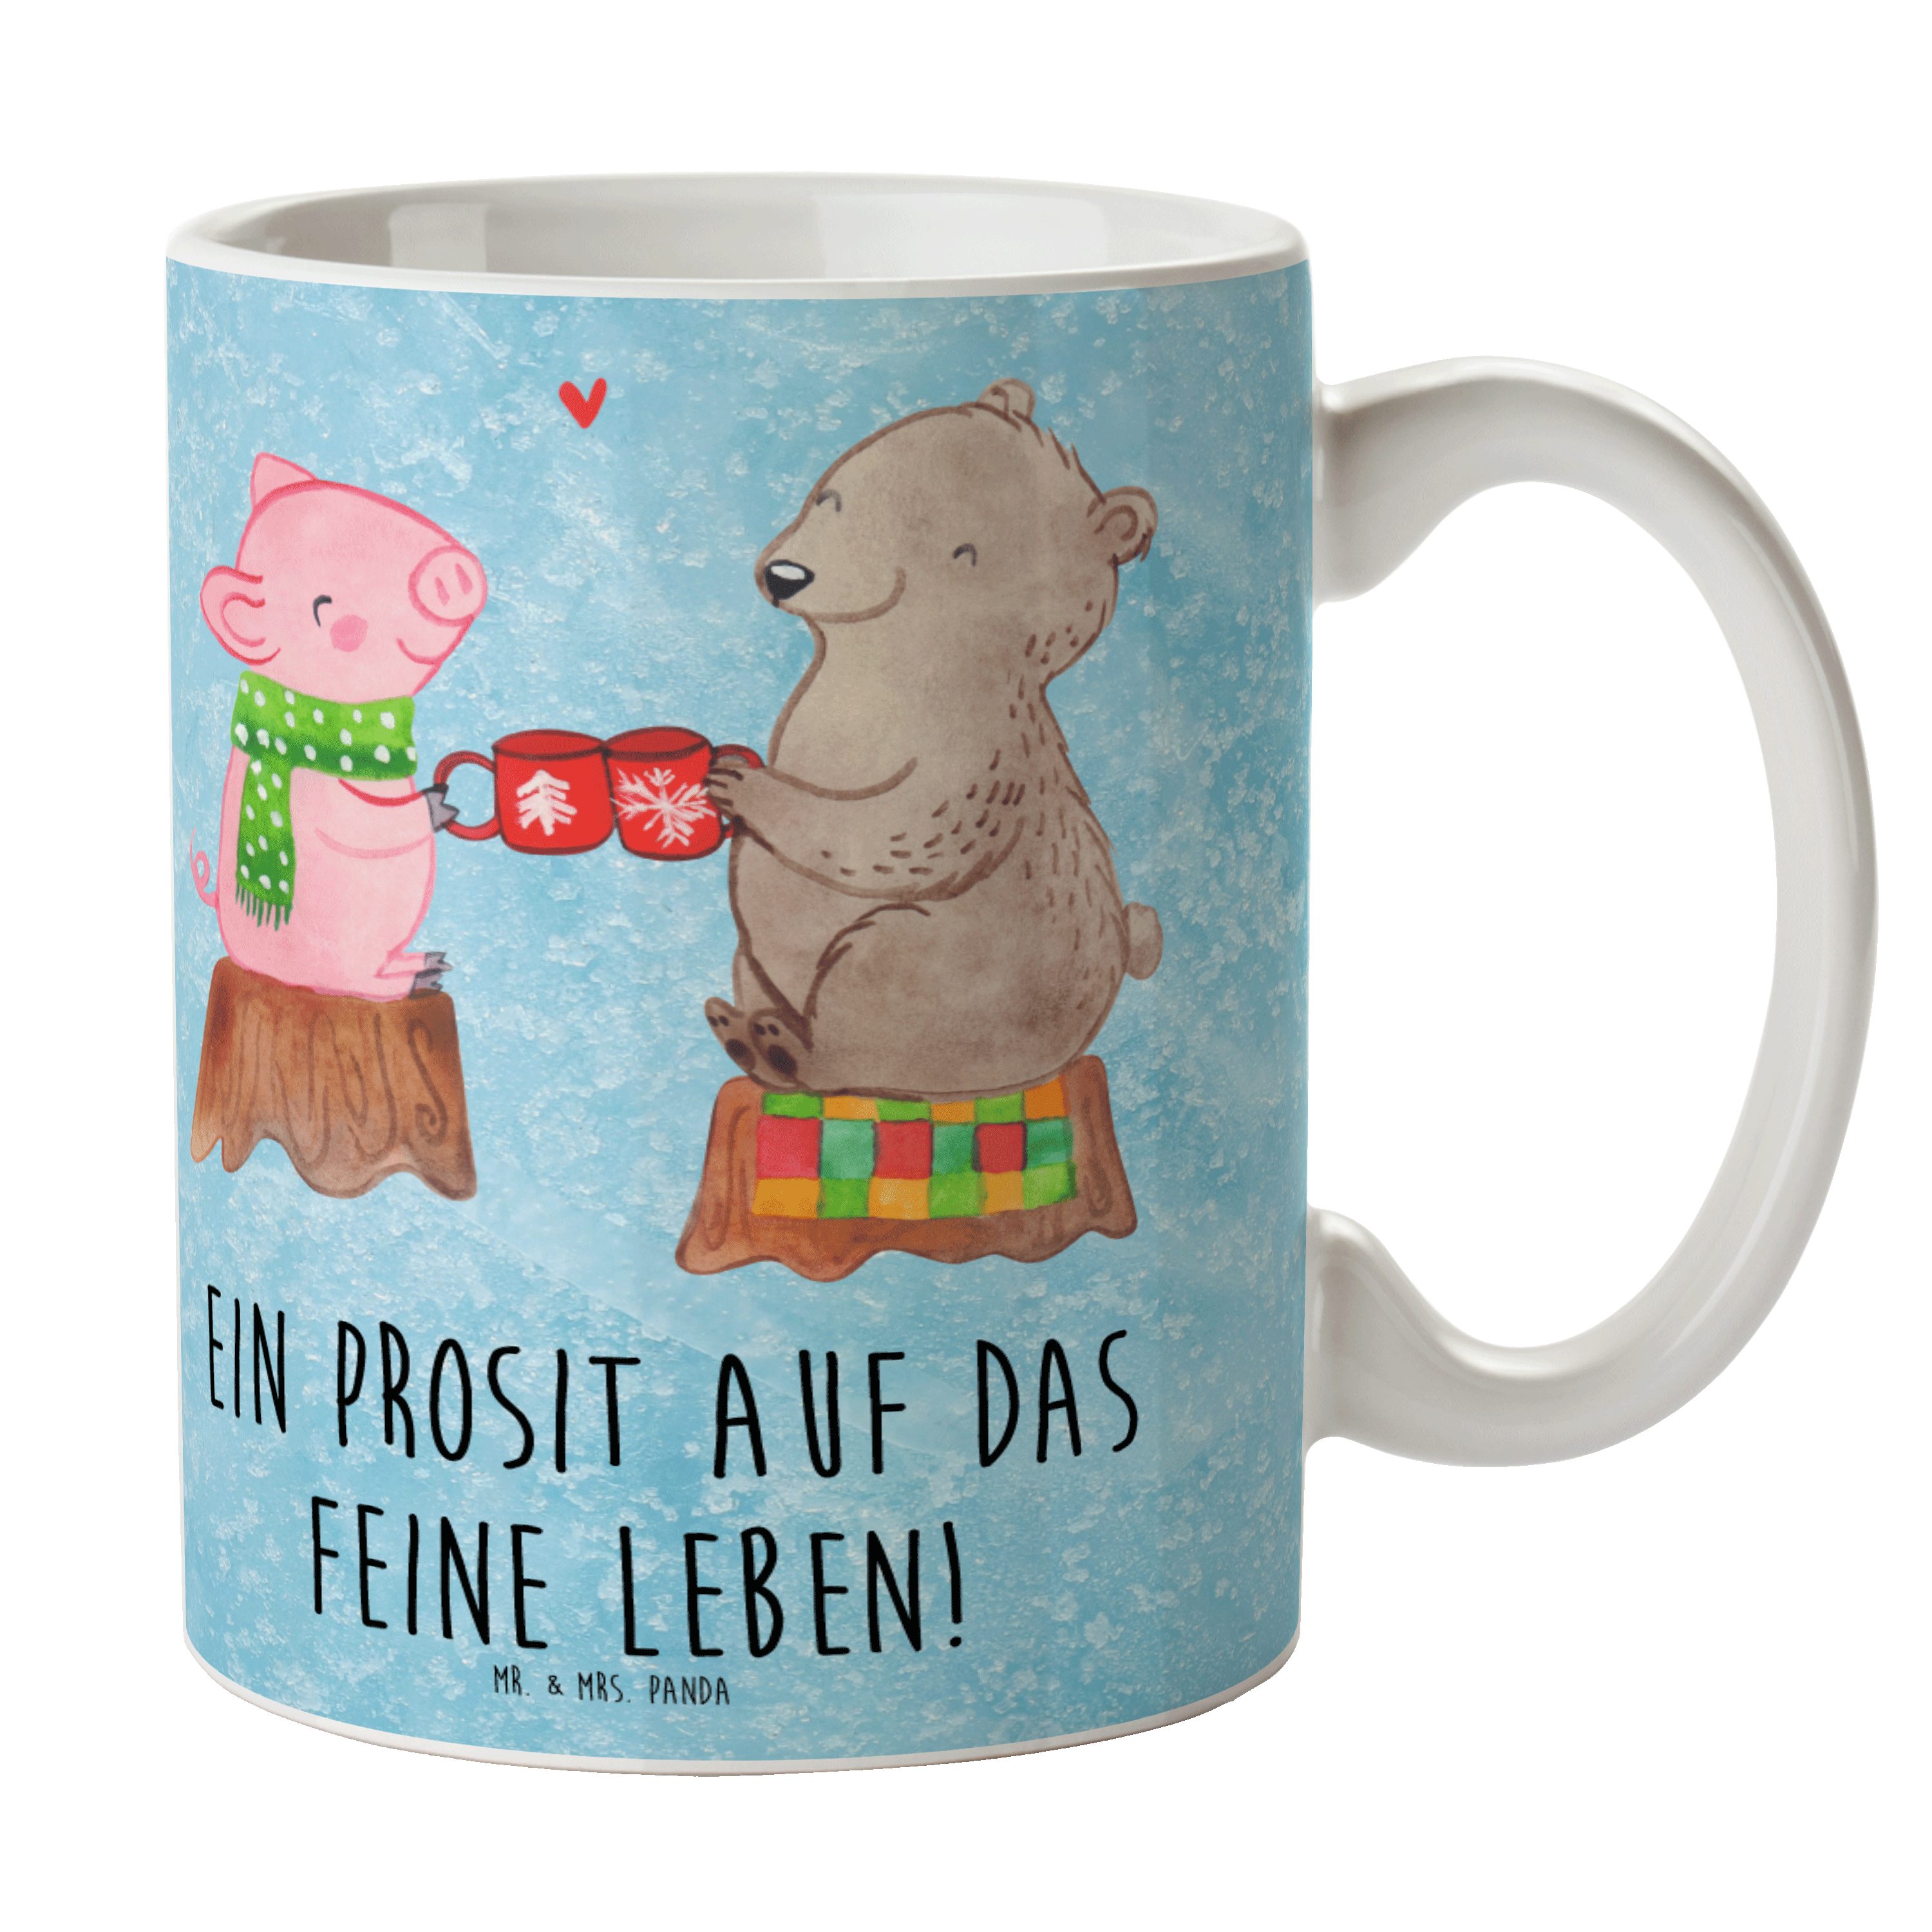 Mr. & Mrs. Panda Tasse Glühschwein Sause - Eisblau - Geschenk, Tasse, Alles Gute, Weihnachte, Keramik